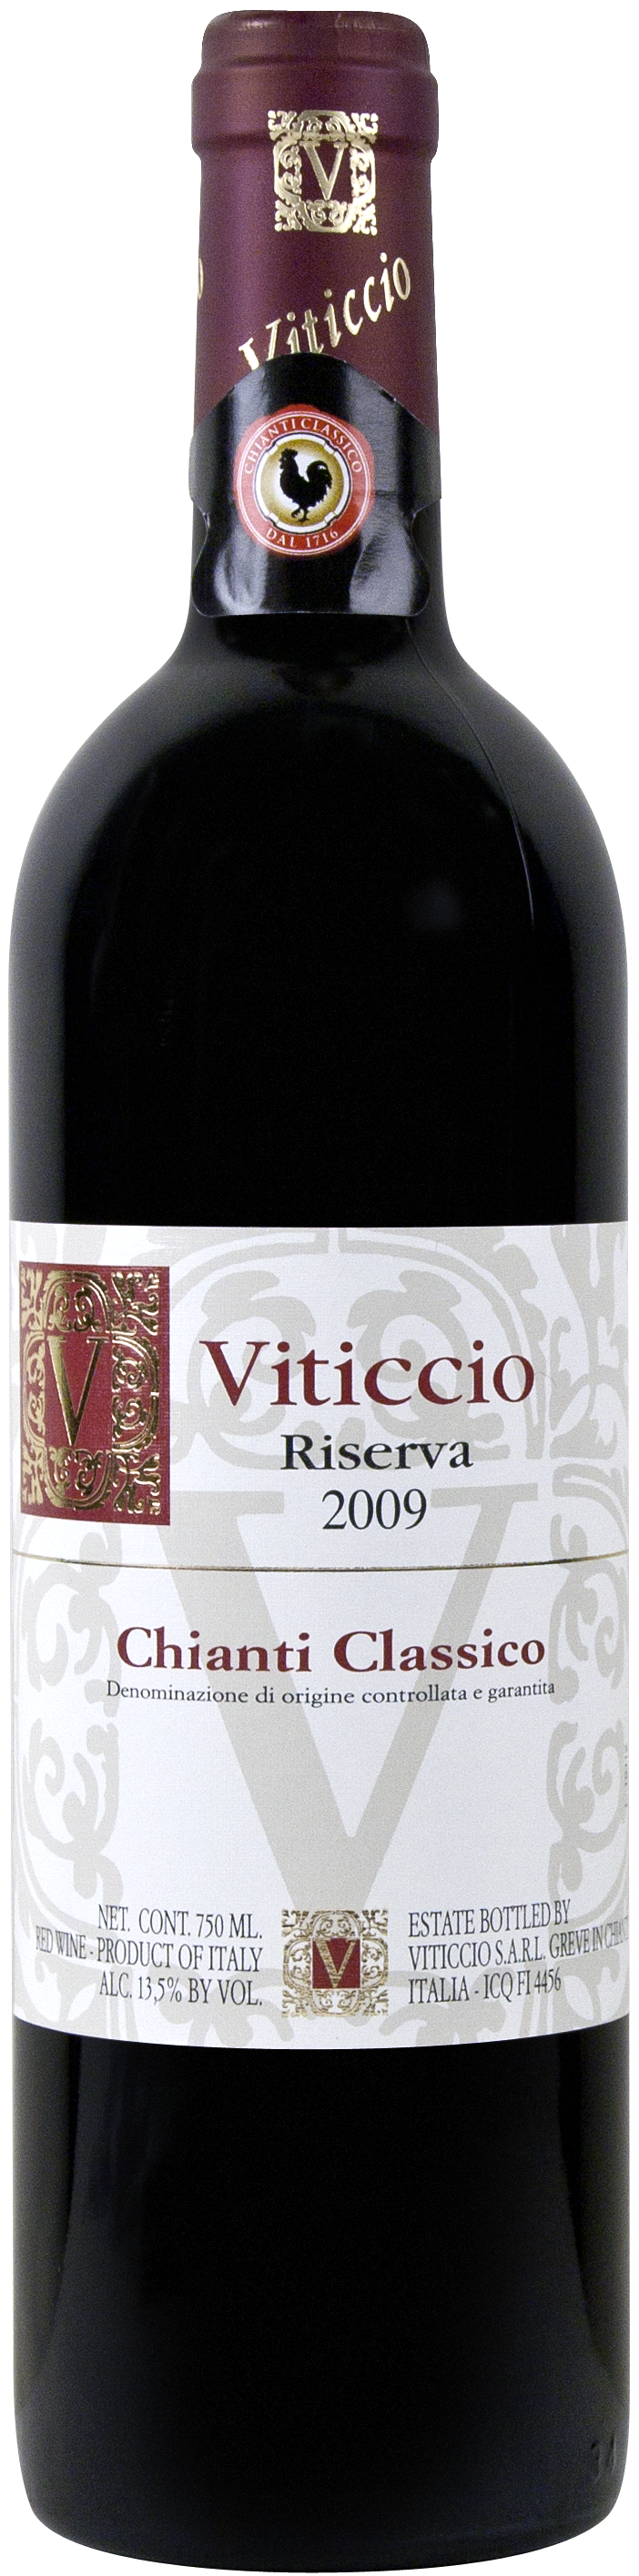 Viticcio Chianti Classico Riserva 2009 (JS:94)